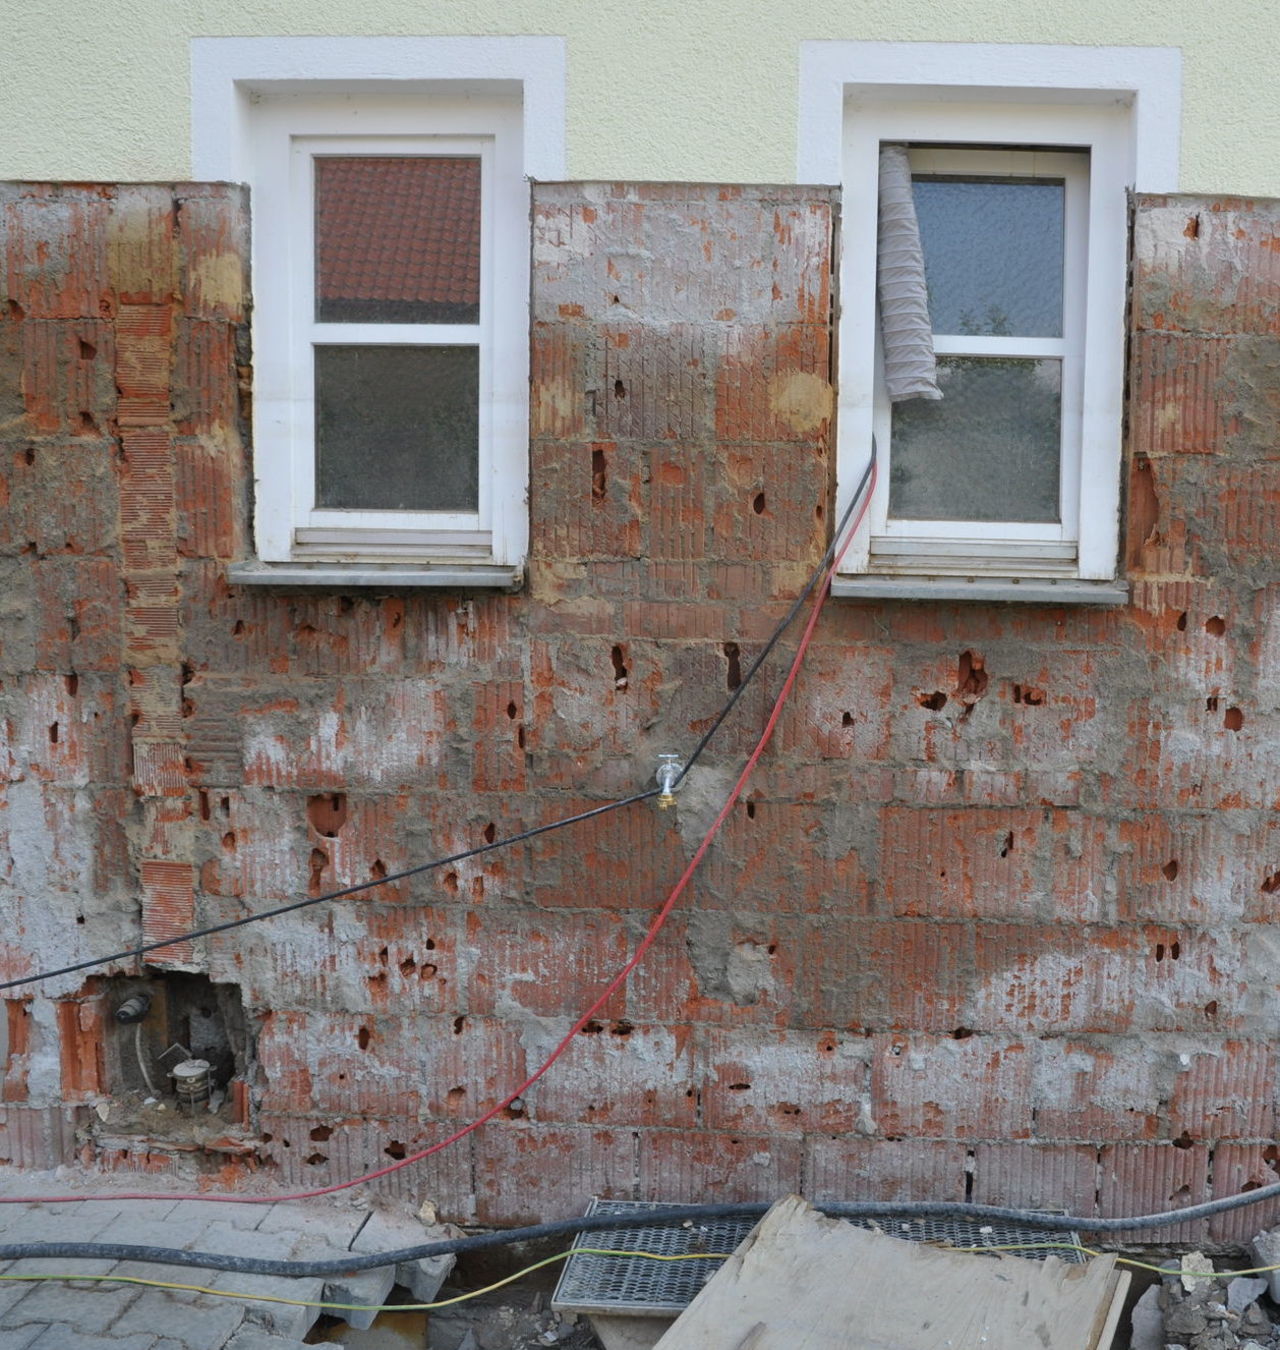 Dunkle Verfärbungen nach Entfernen des Putzes deuten auf eine Heizölbelastung auch im Mauerwerk hin